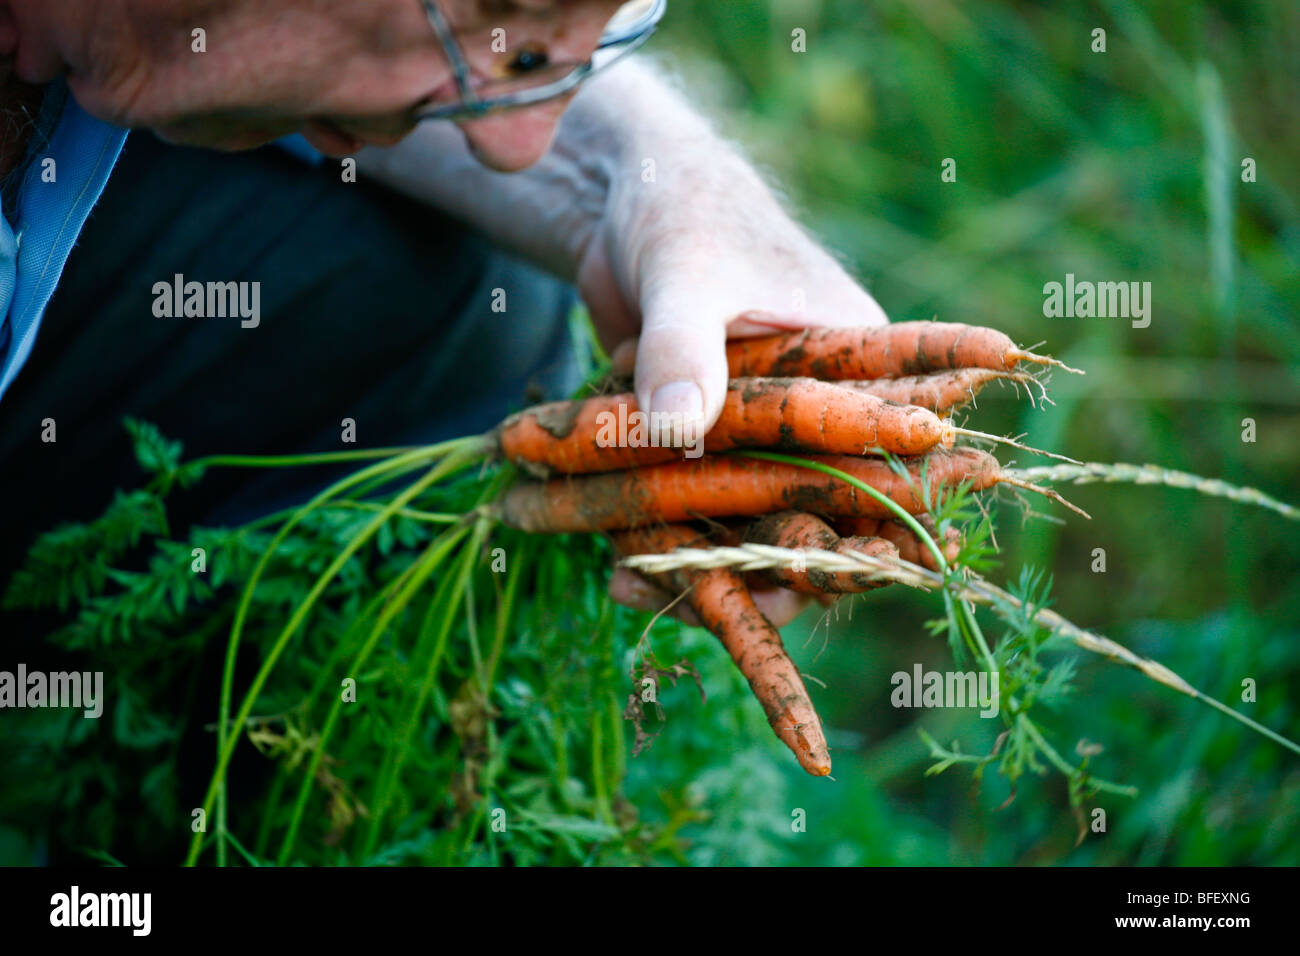 Senior citizen robuste carottes préparation dans un jardin. Banque D'Images